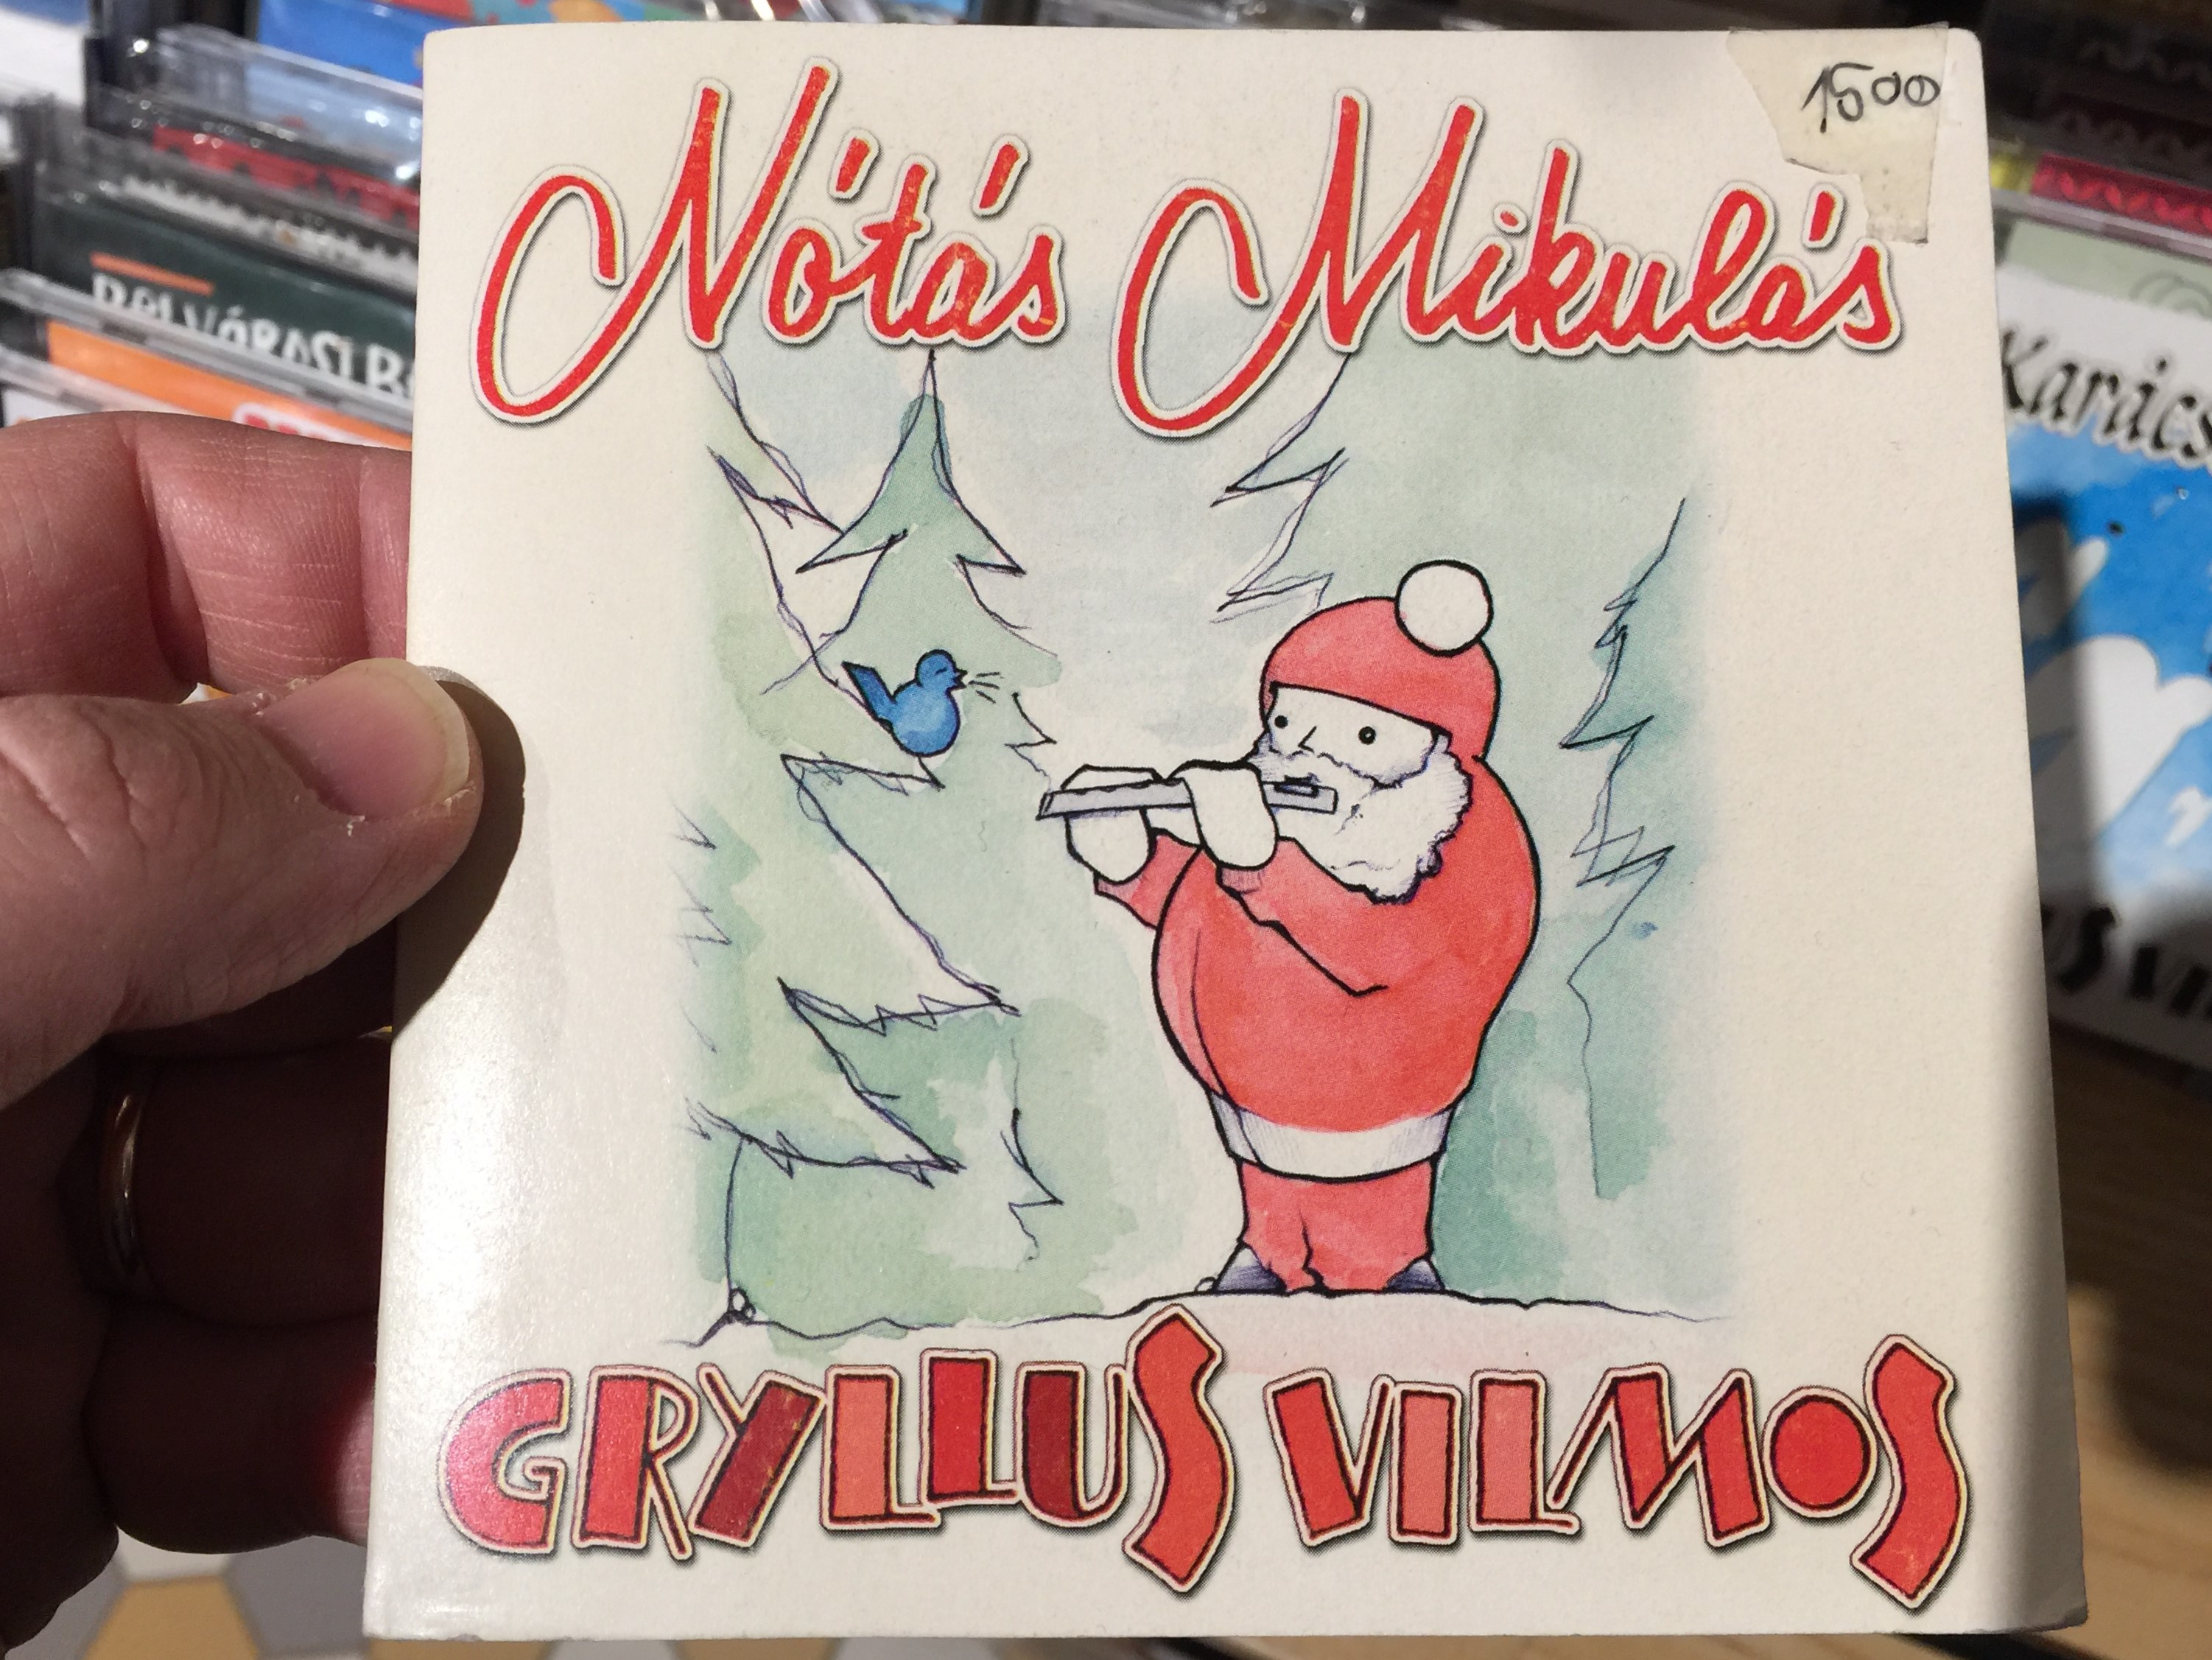 gryllus-vilmos-n-t-s-mikul-s-treff-audio-cd-2003-trcd-006-1-.jpg